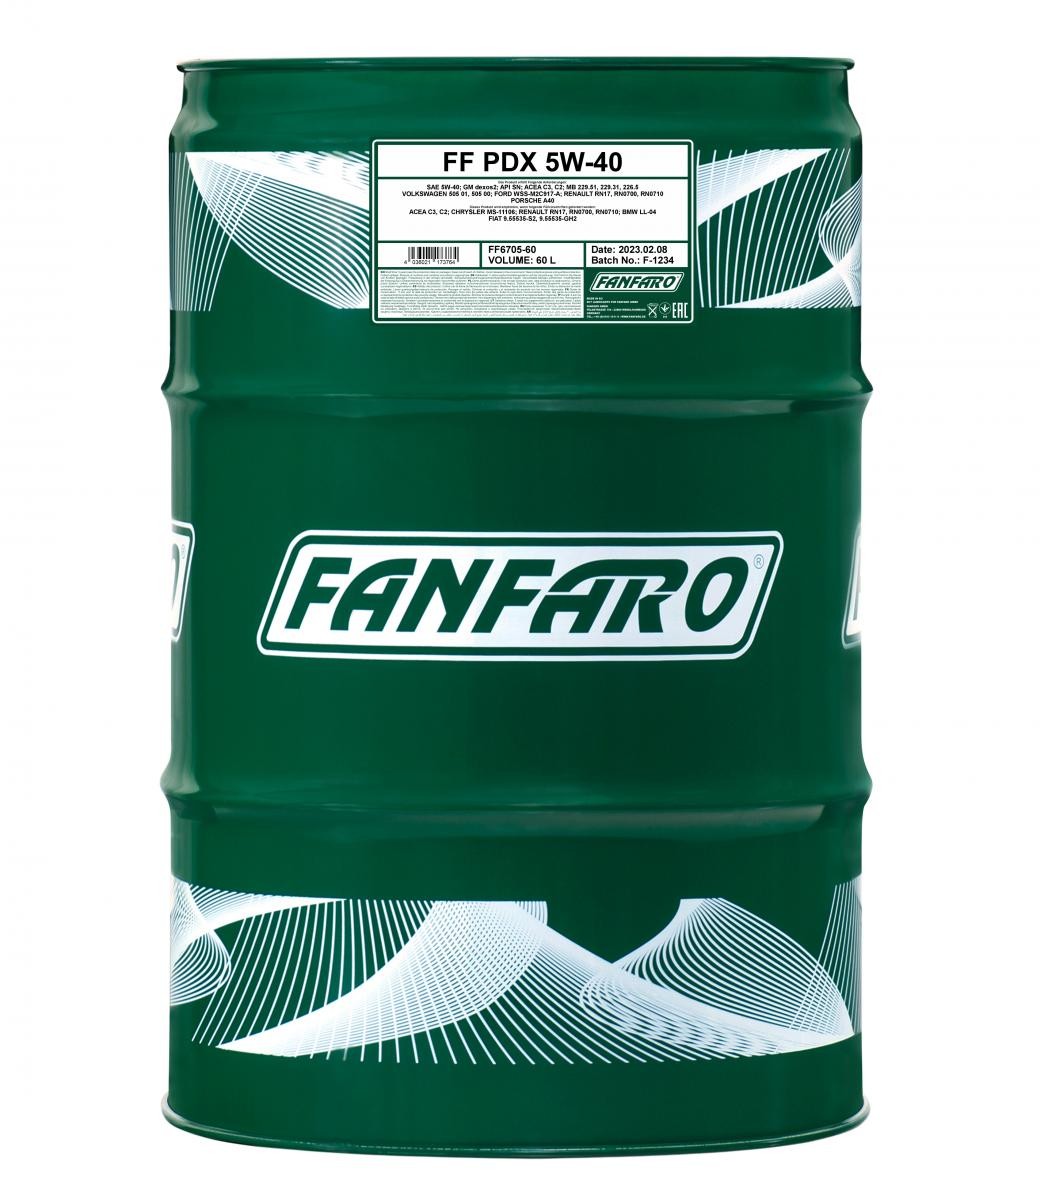 Original FF6705-60 FANFARO Automobile oil MINI